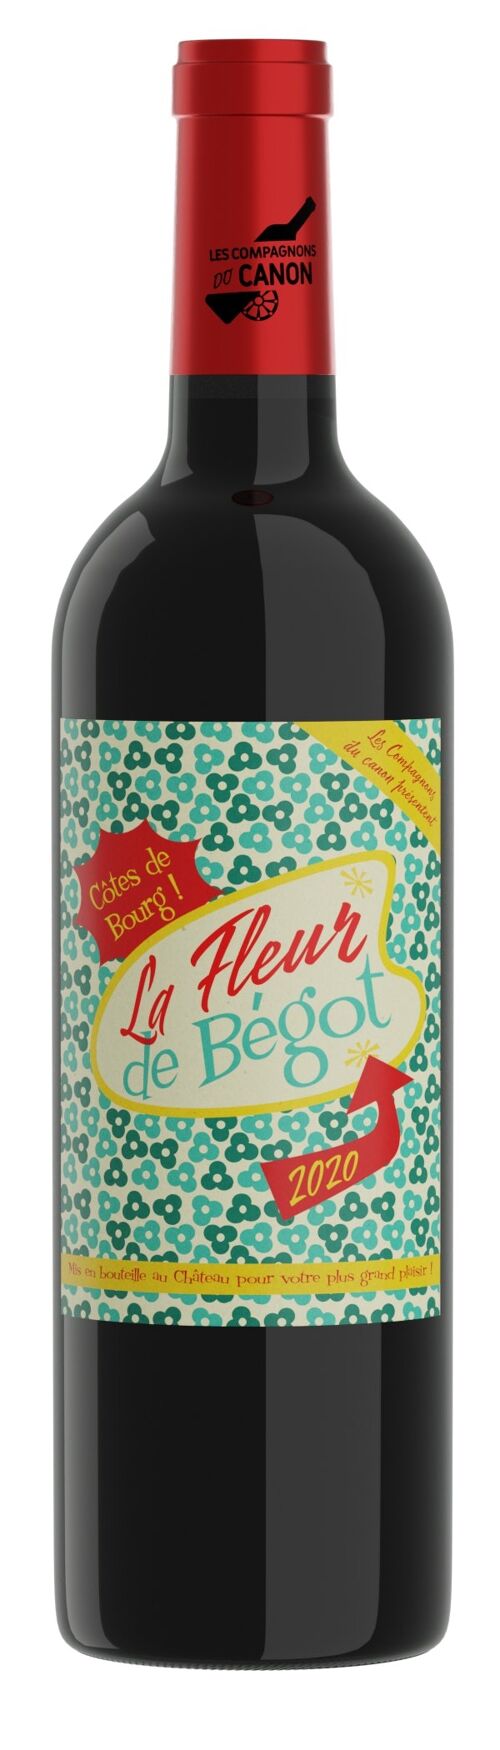 La fleur de Bégot 2018 - Côtes-de-Bourg